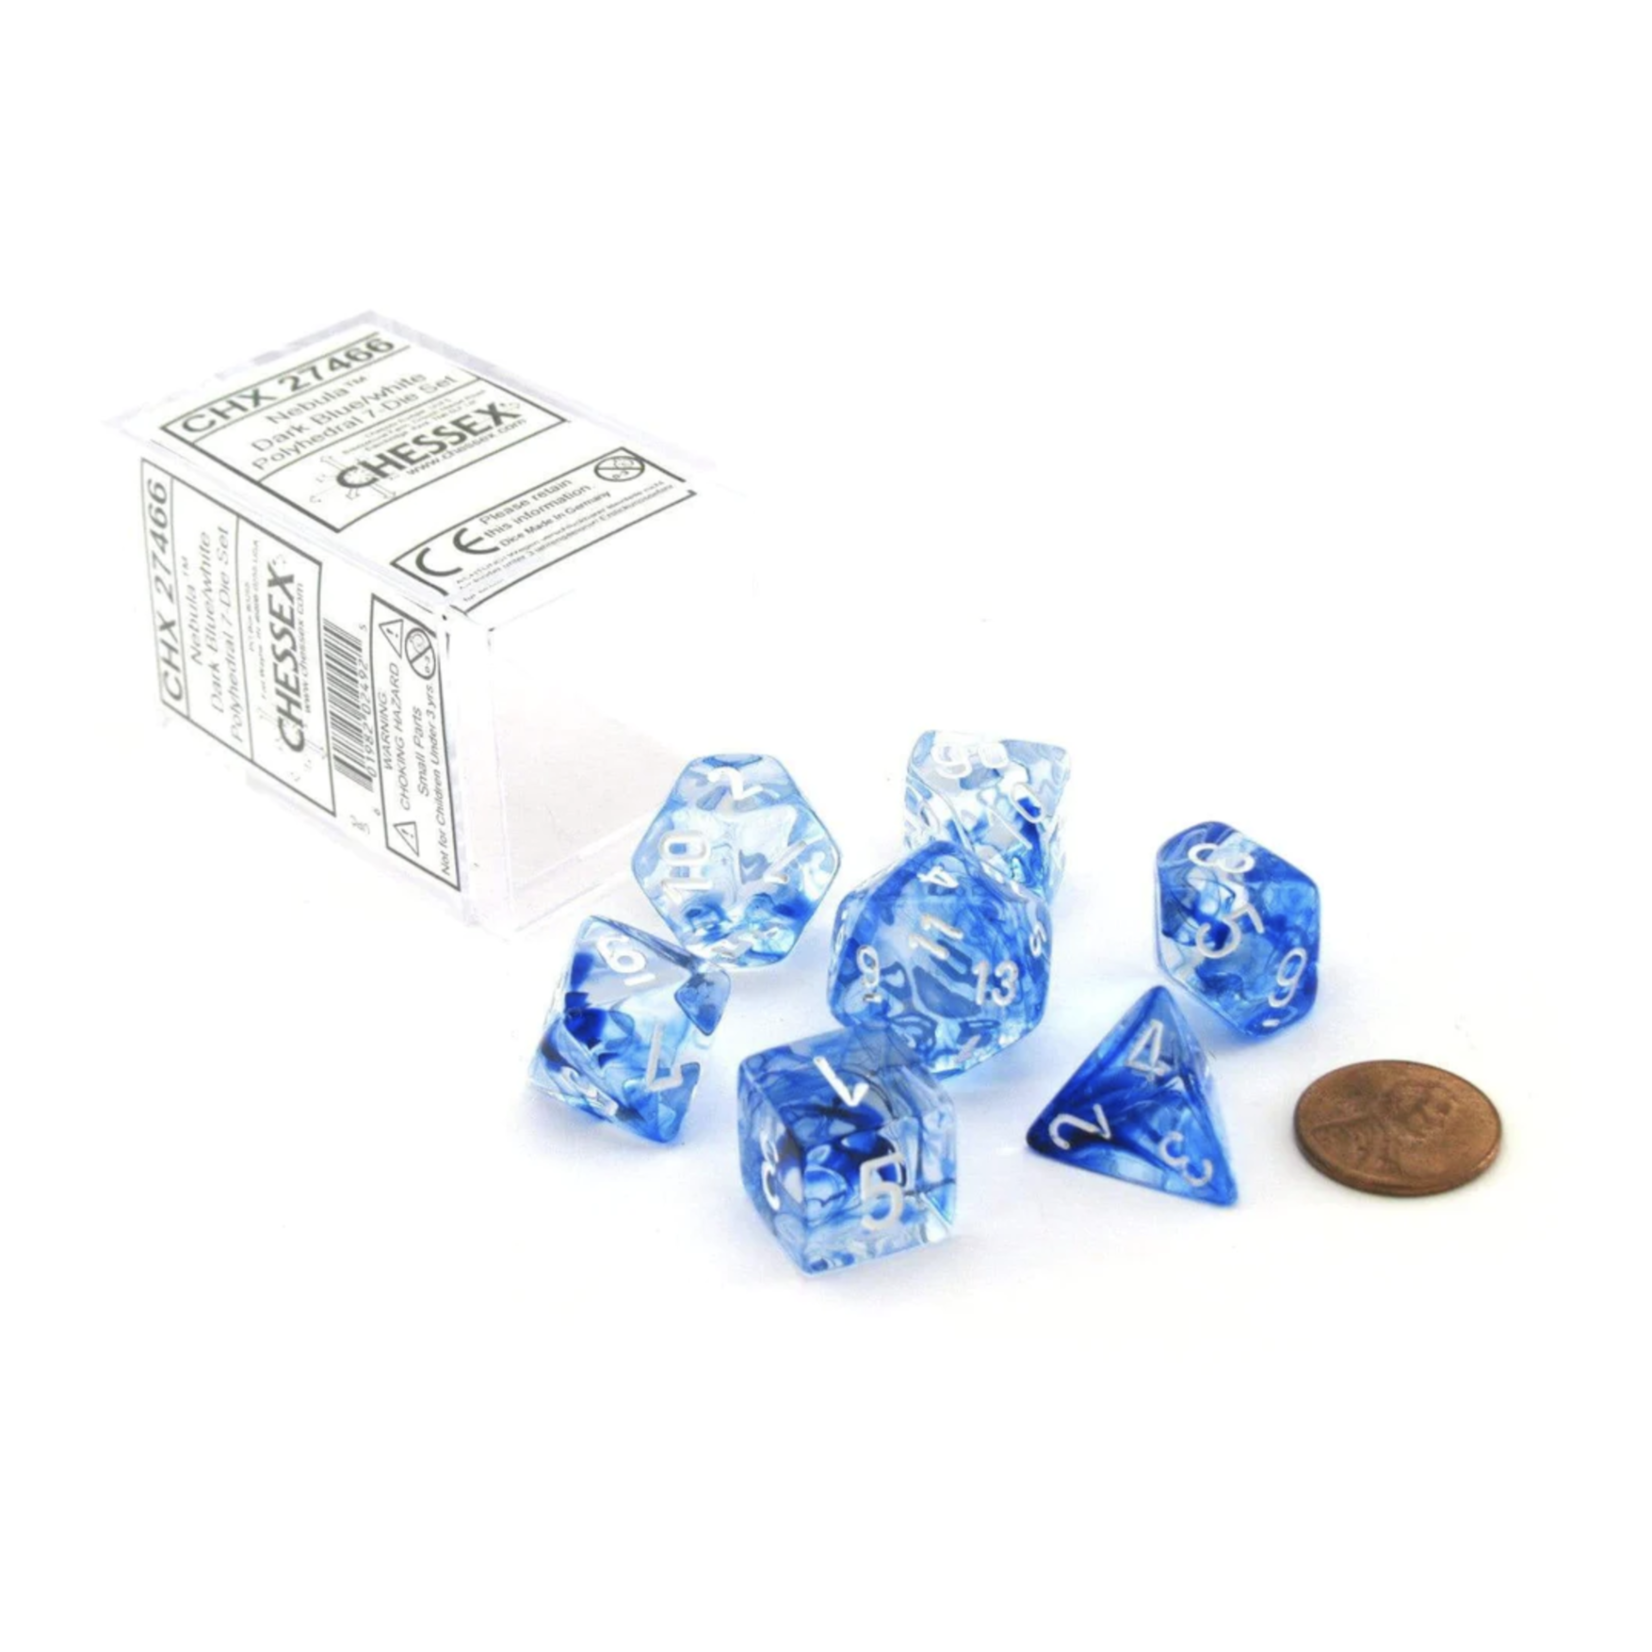 Chessex Nebula Dark Blue White 7 die set